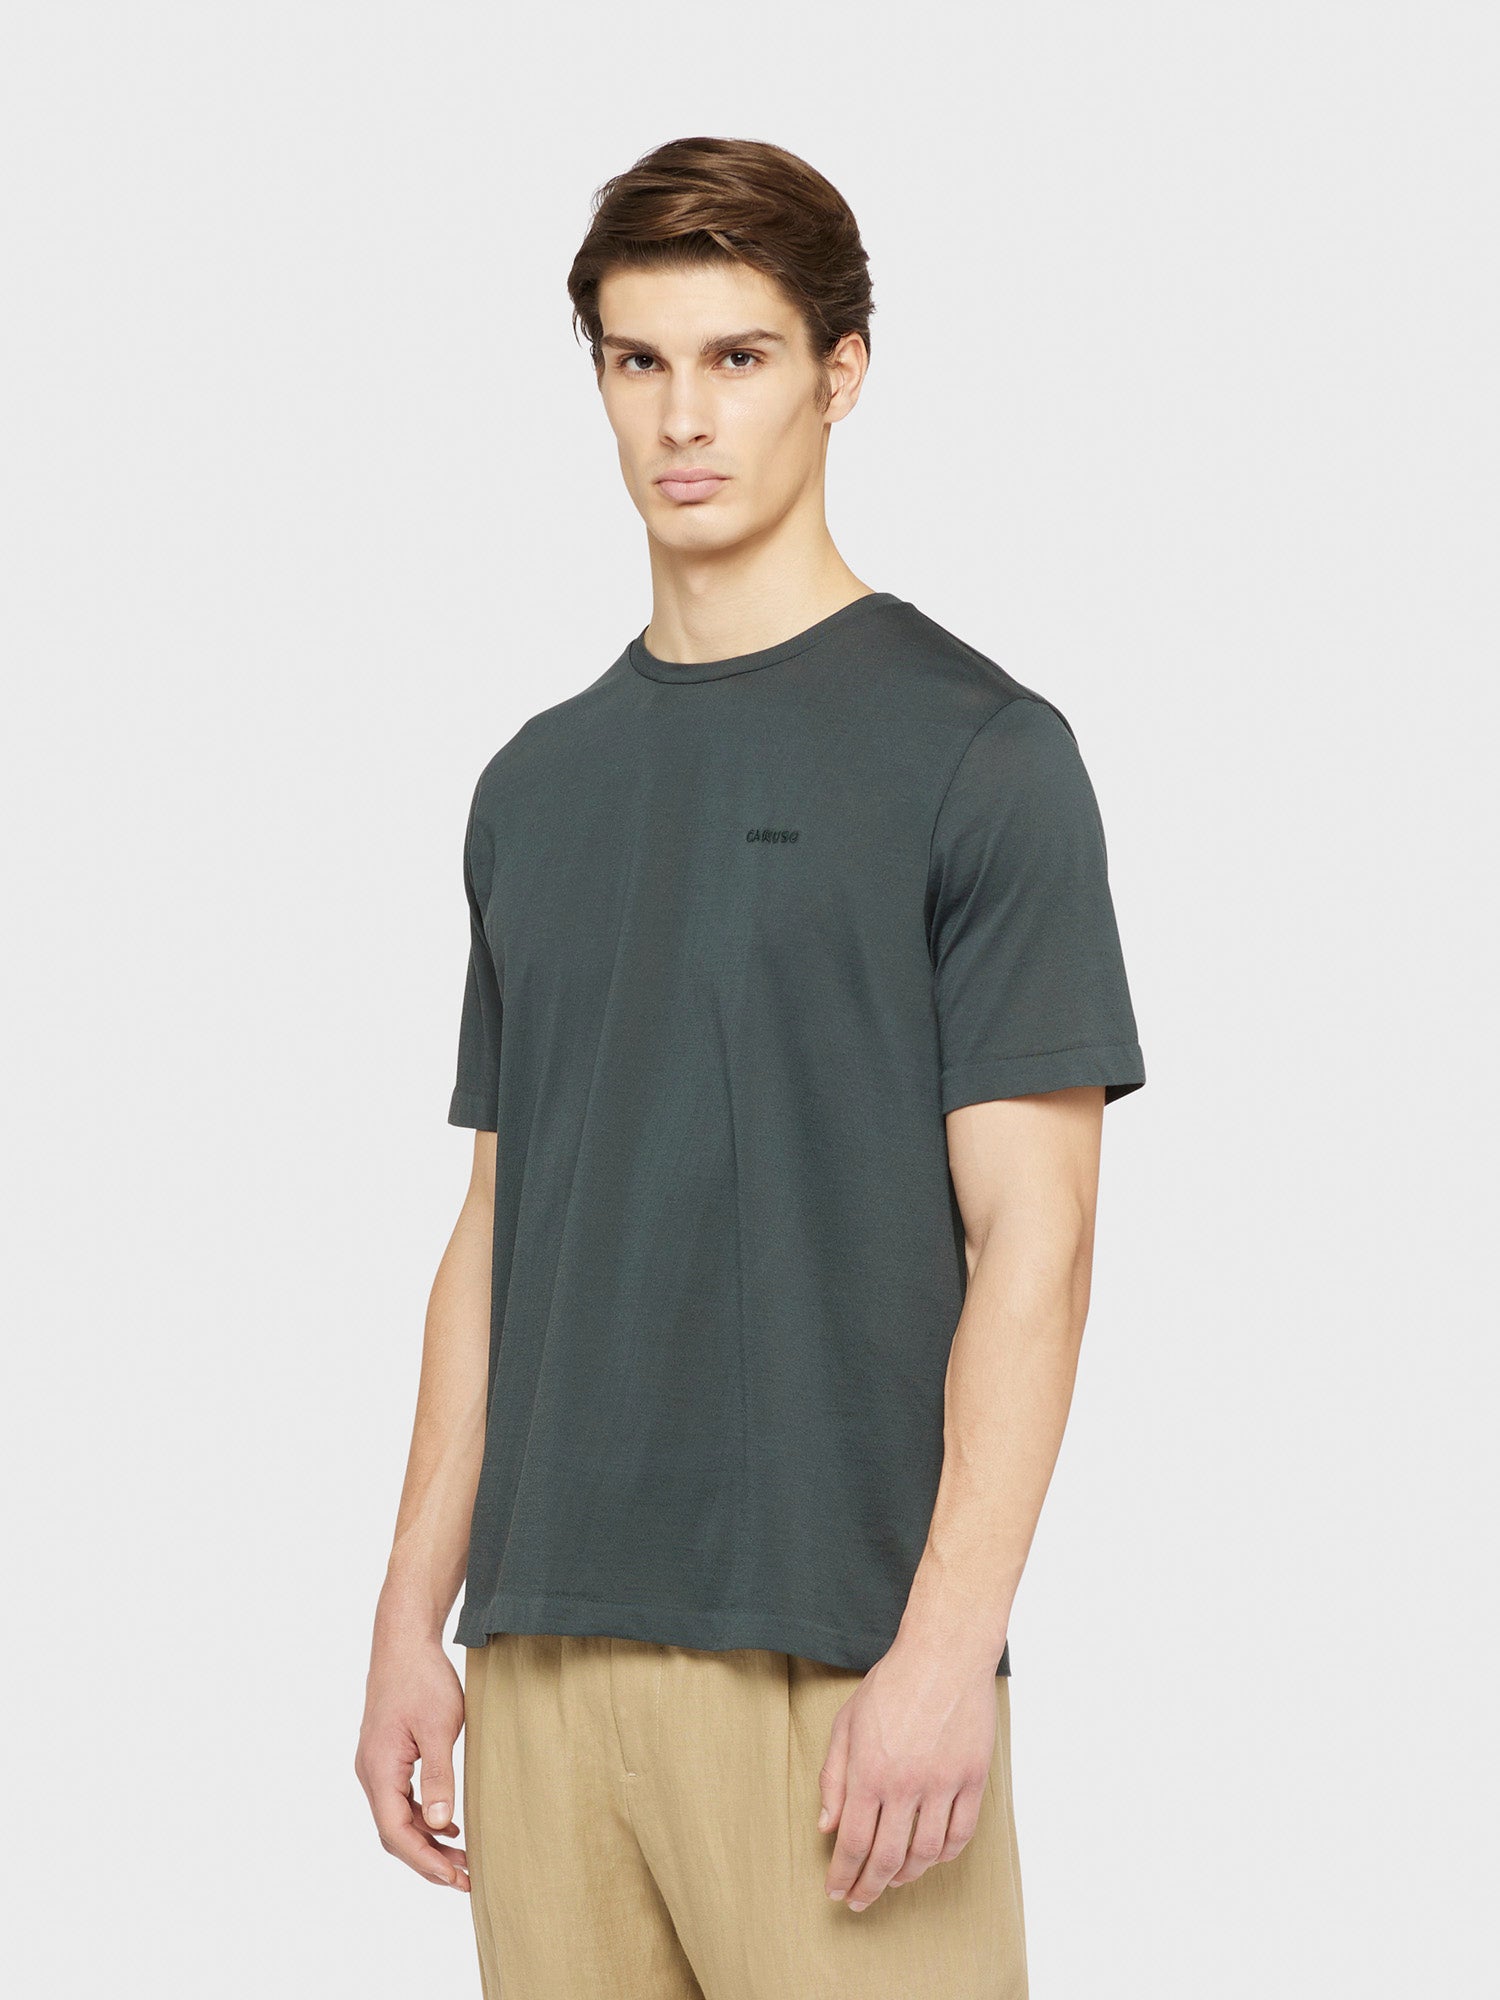 Caruso Menswear Abbigliamento Uomo T-Shirt girocollo seamless in jersey carbone indossato